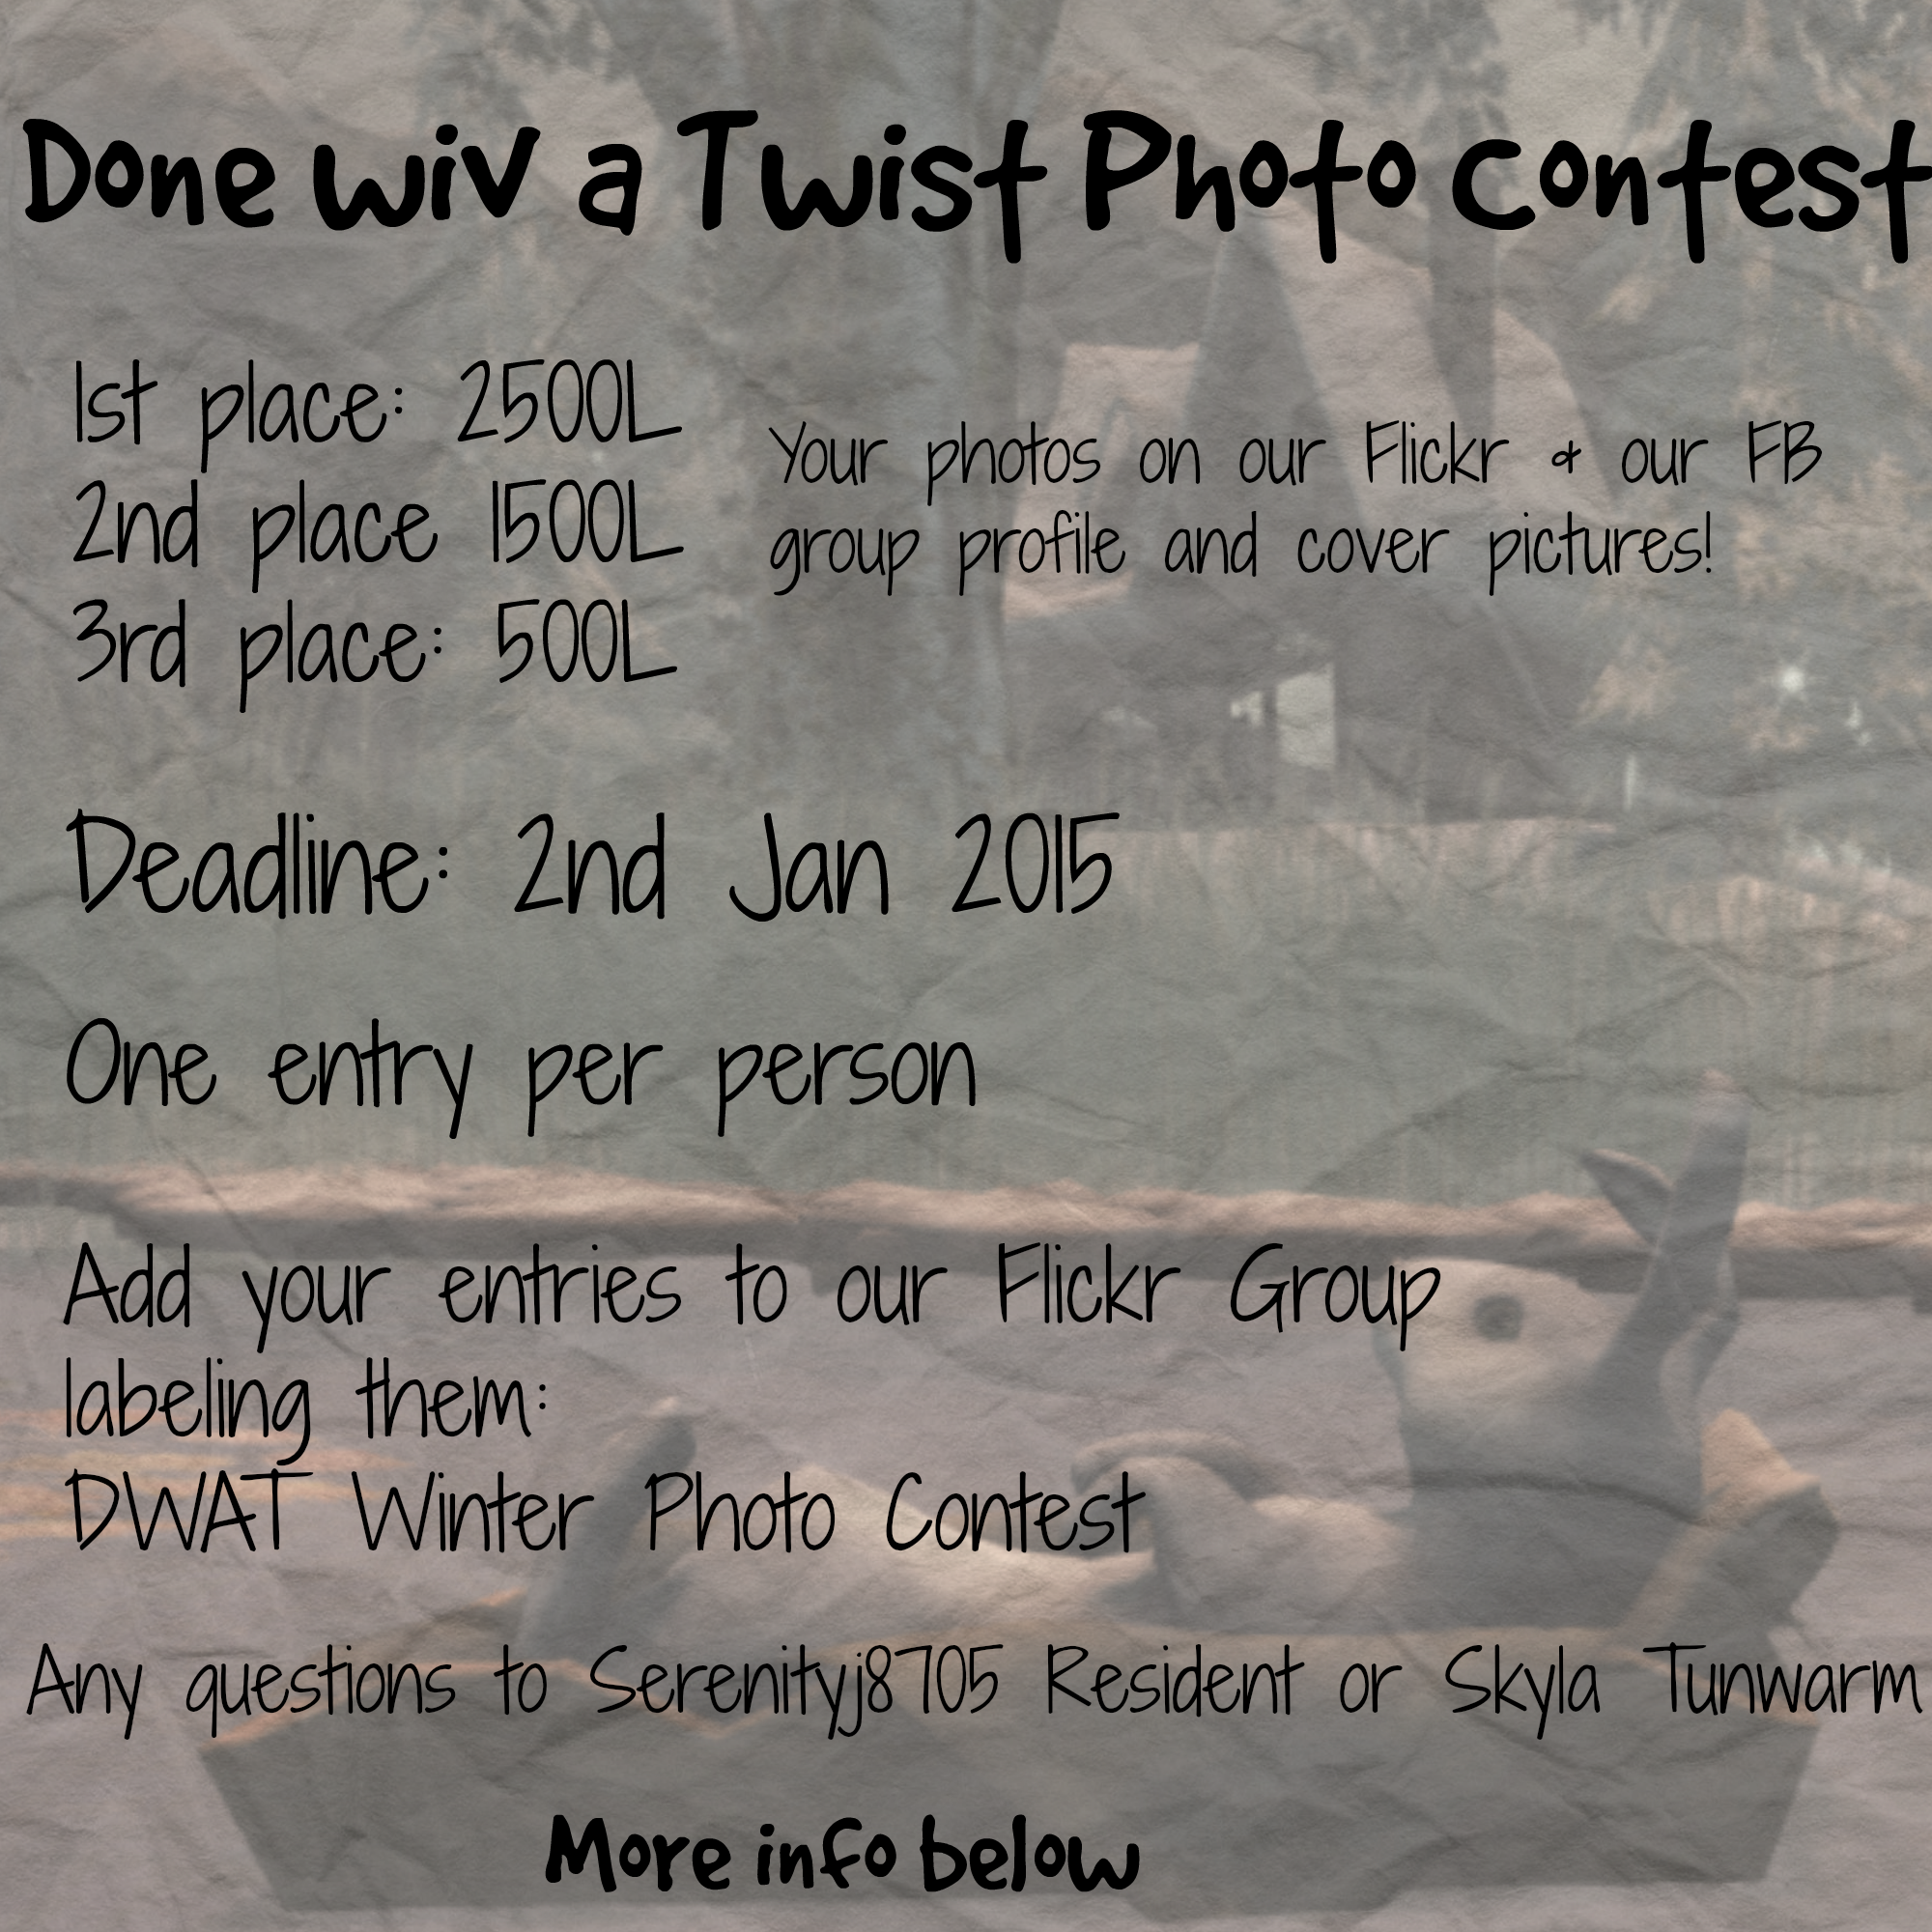 Done wiv a Twist Winter Photo Contest!!